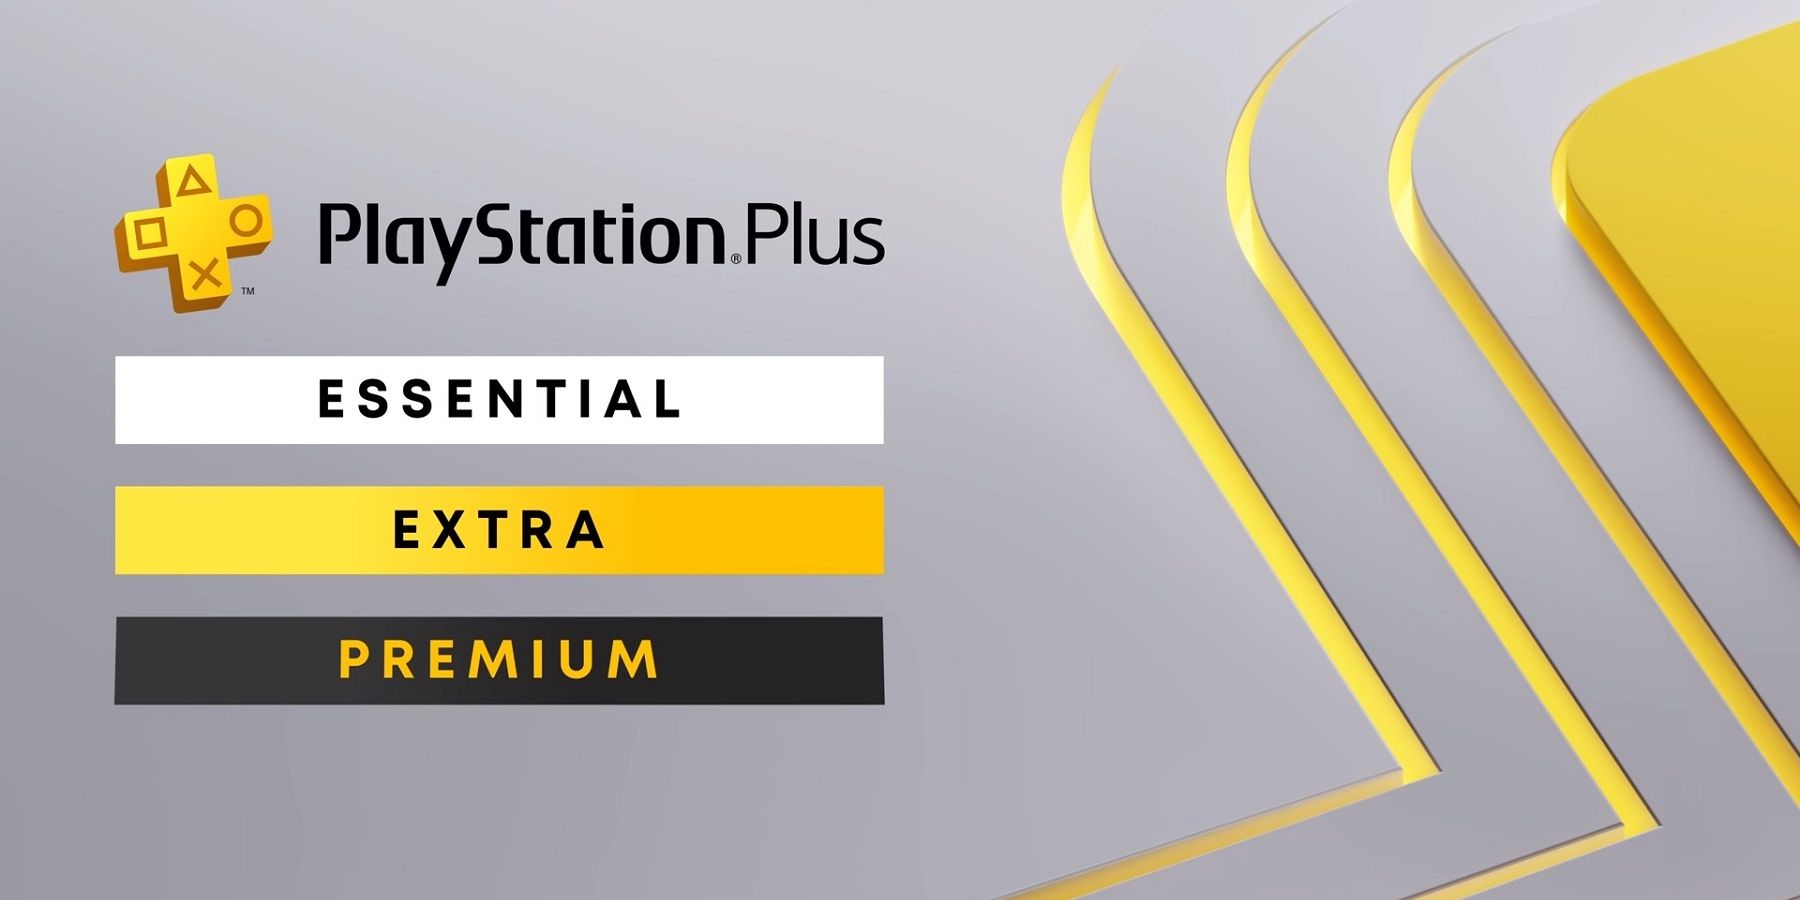 Playstation Plus Premium Price comparison